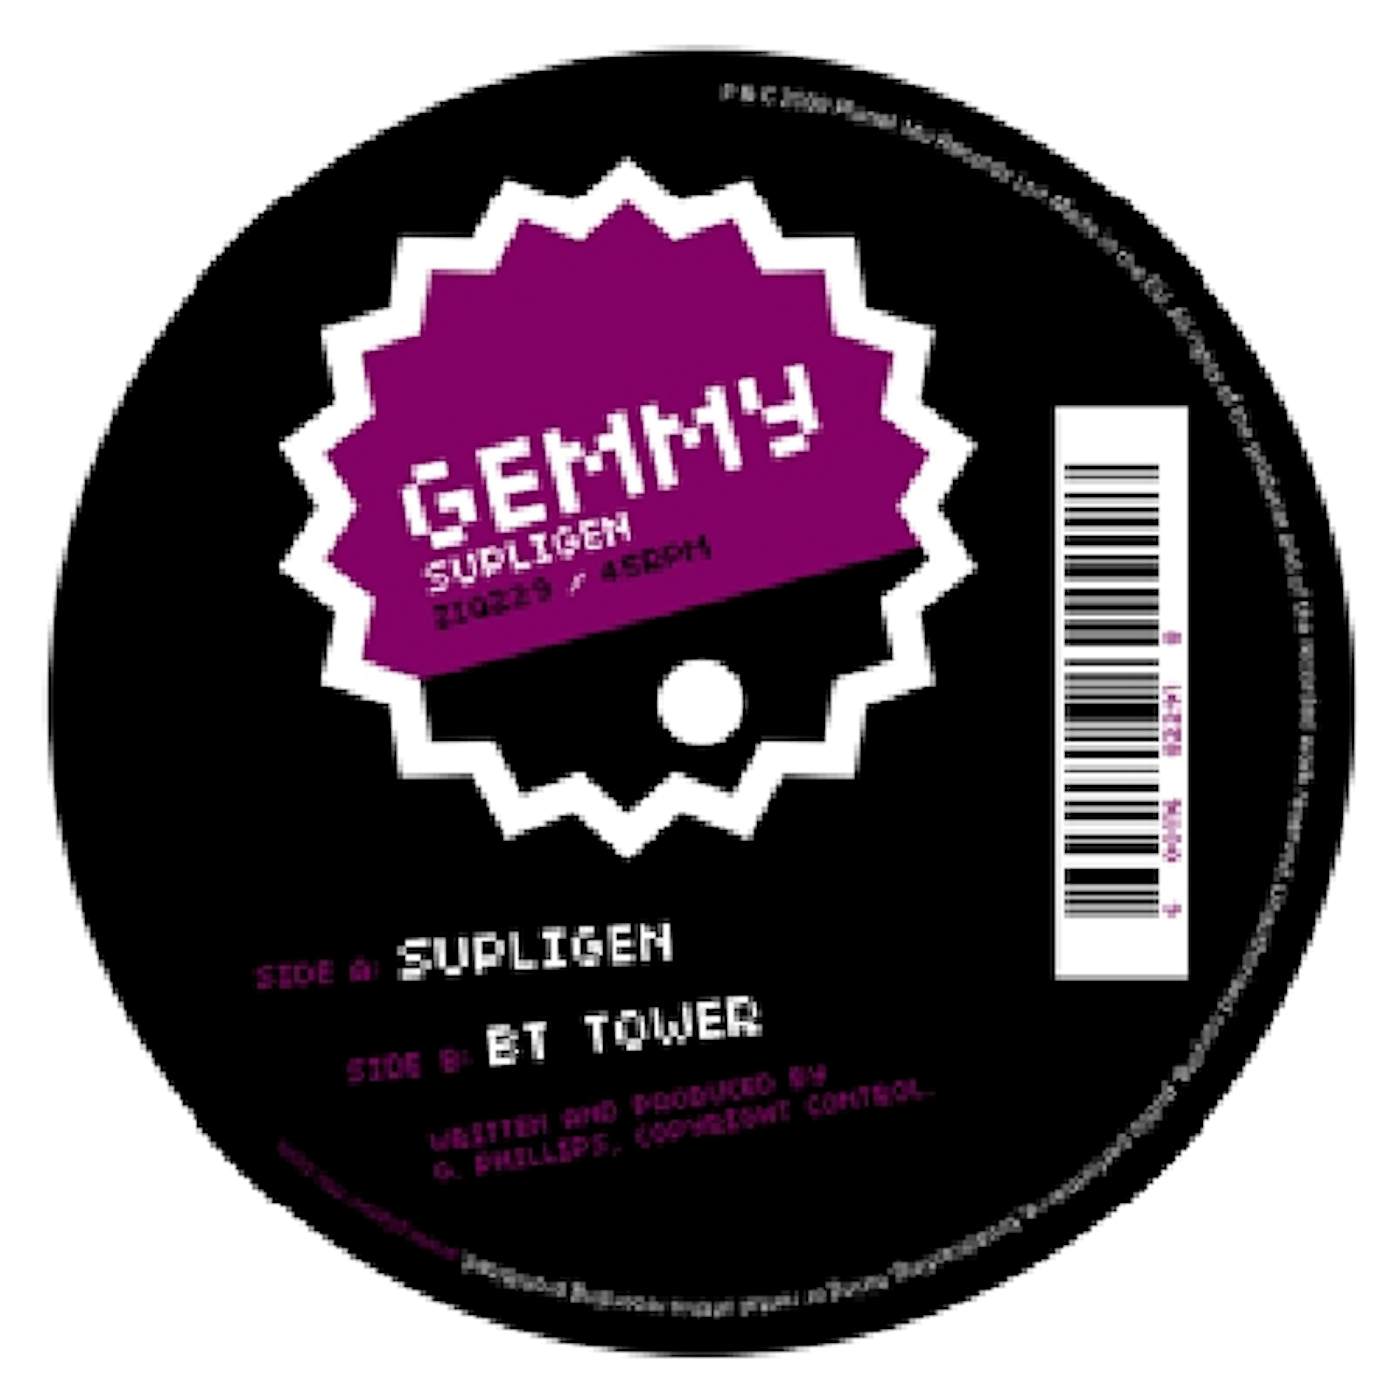 Gemmy SUPLIGEN Vinyl Record